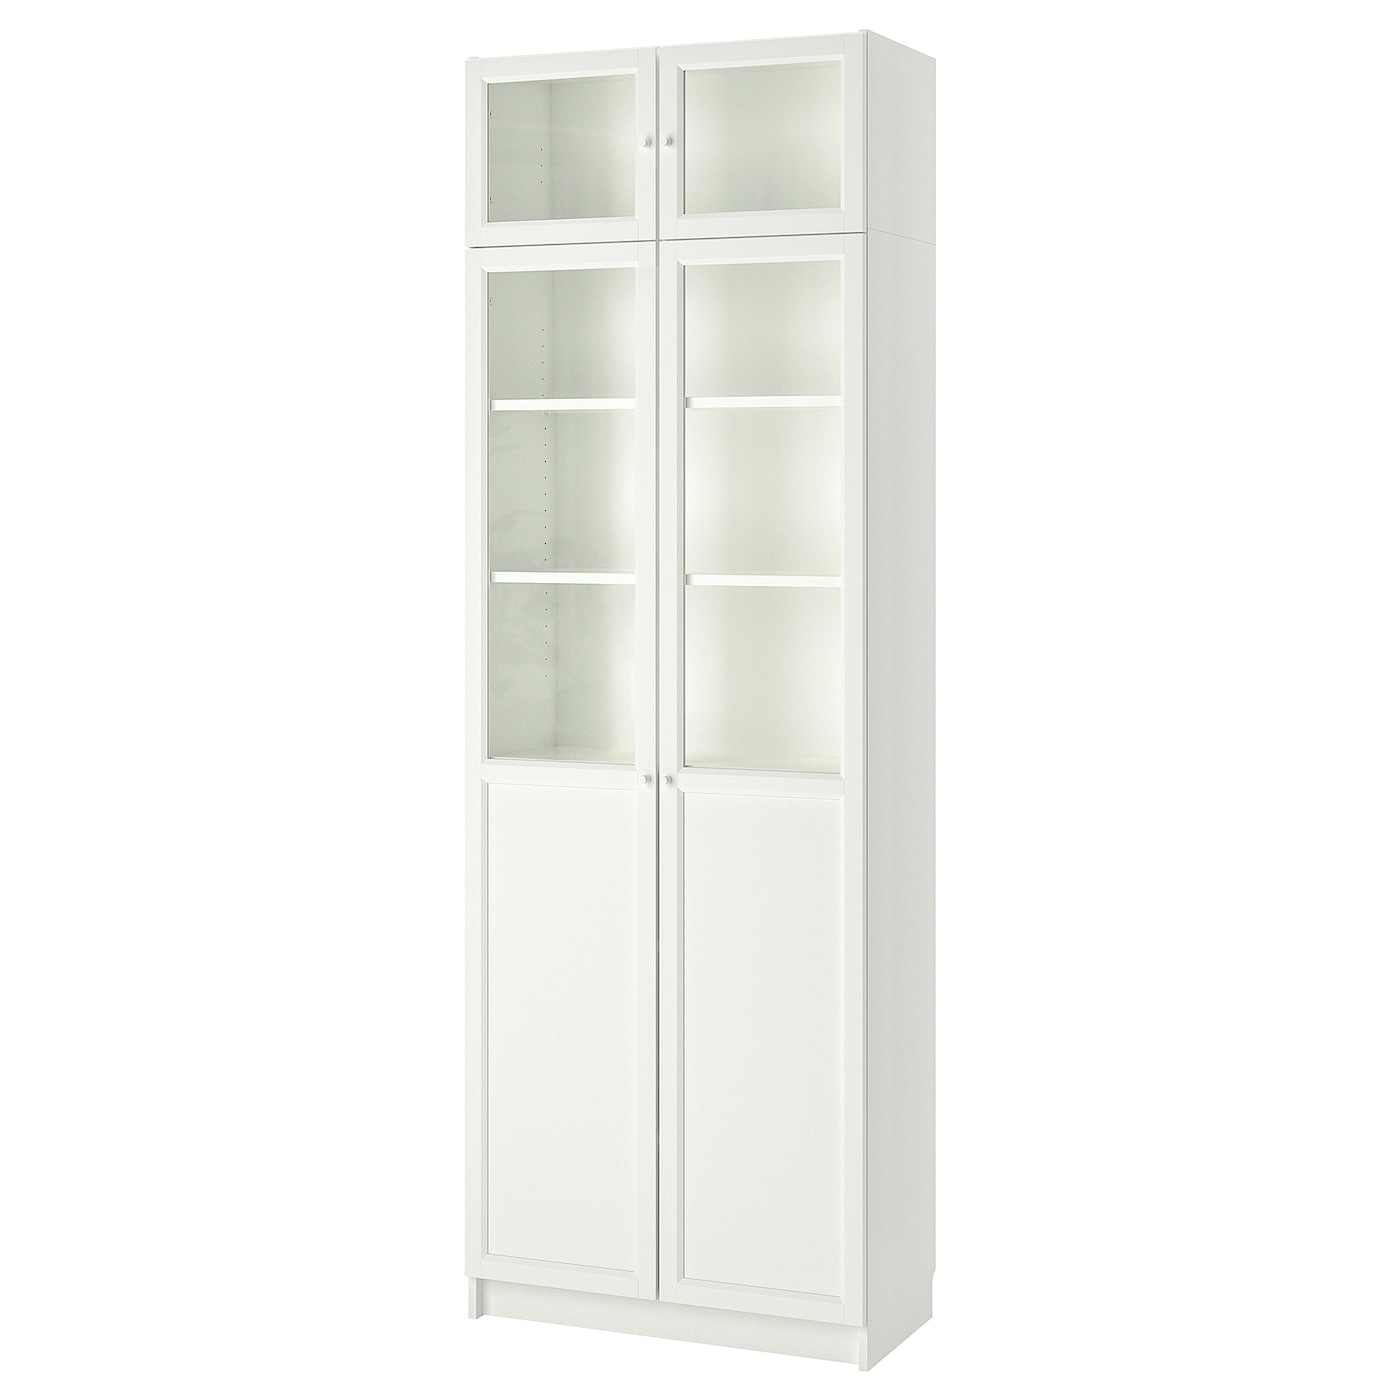 Стеллаж - IKEA BILLY/OXBERG, 80х42х237 см, белый/стекло, БИЛЛИ/ОКСБЕРГ ИКЕА